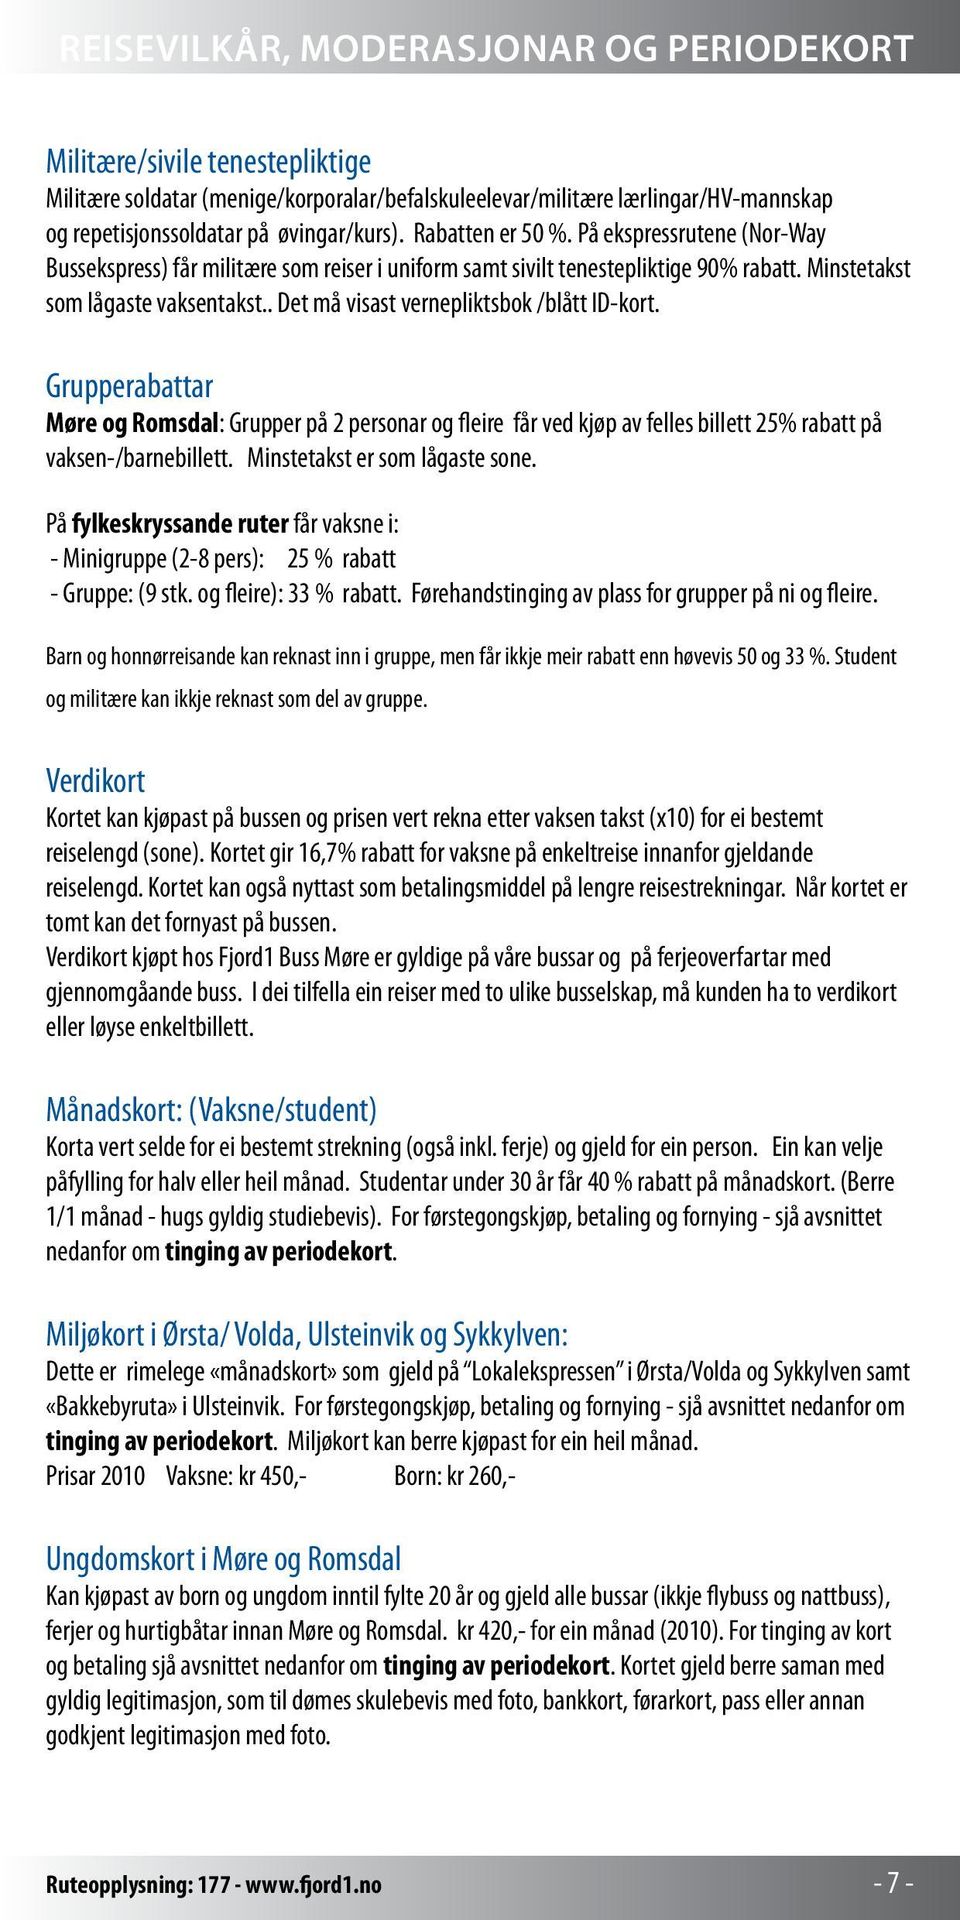 . Det må visast vernepliktsbok /blått ID-kort. Grupperabattar Møre og Romsdal: Grupper på 2 personar og fleire får ved kjøp av felles billett 25% rabatt på vaksen-/barnebillett.